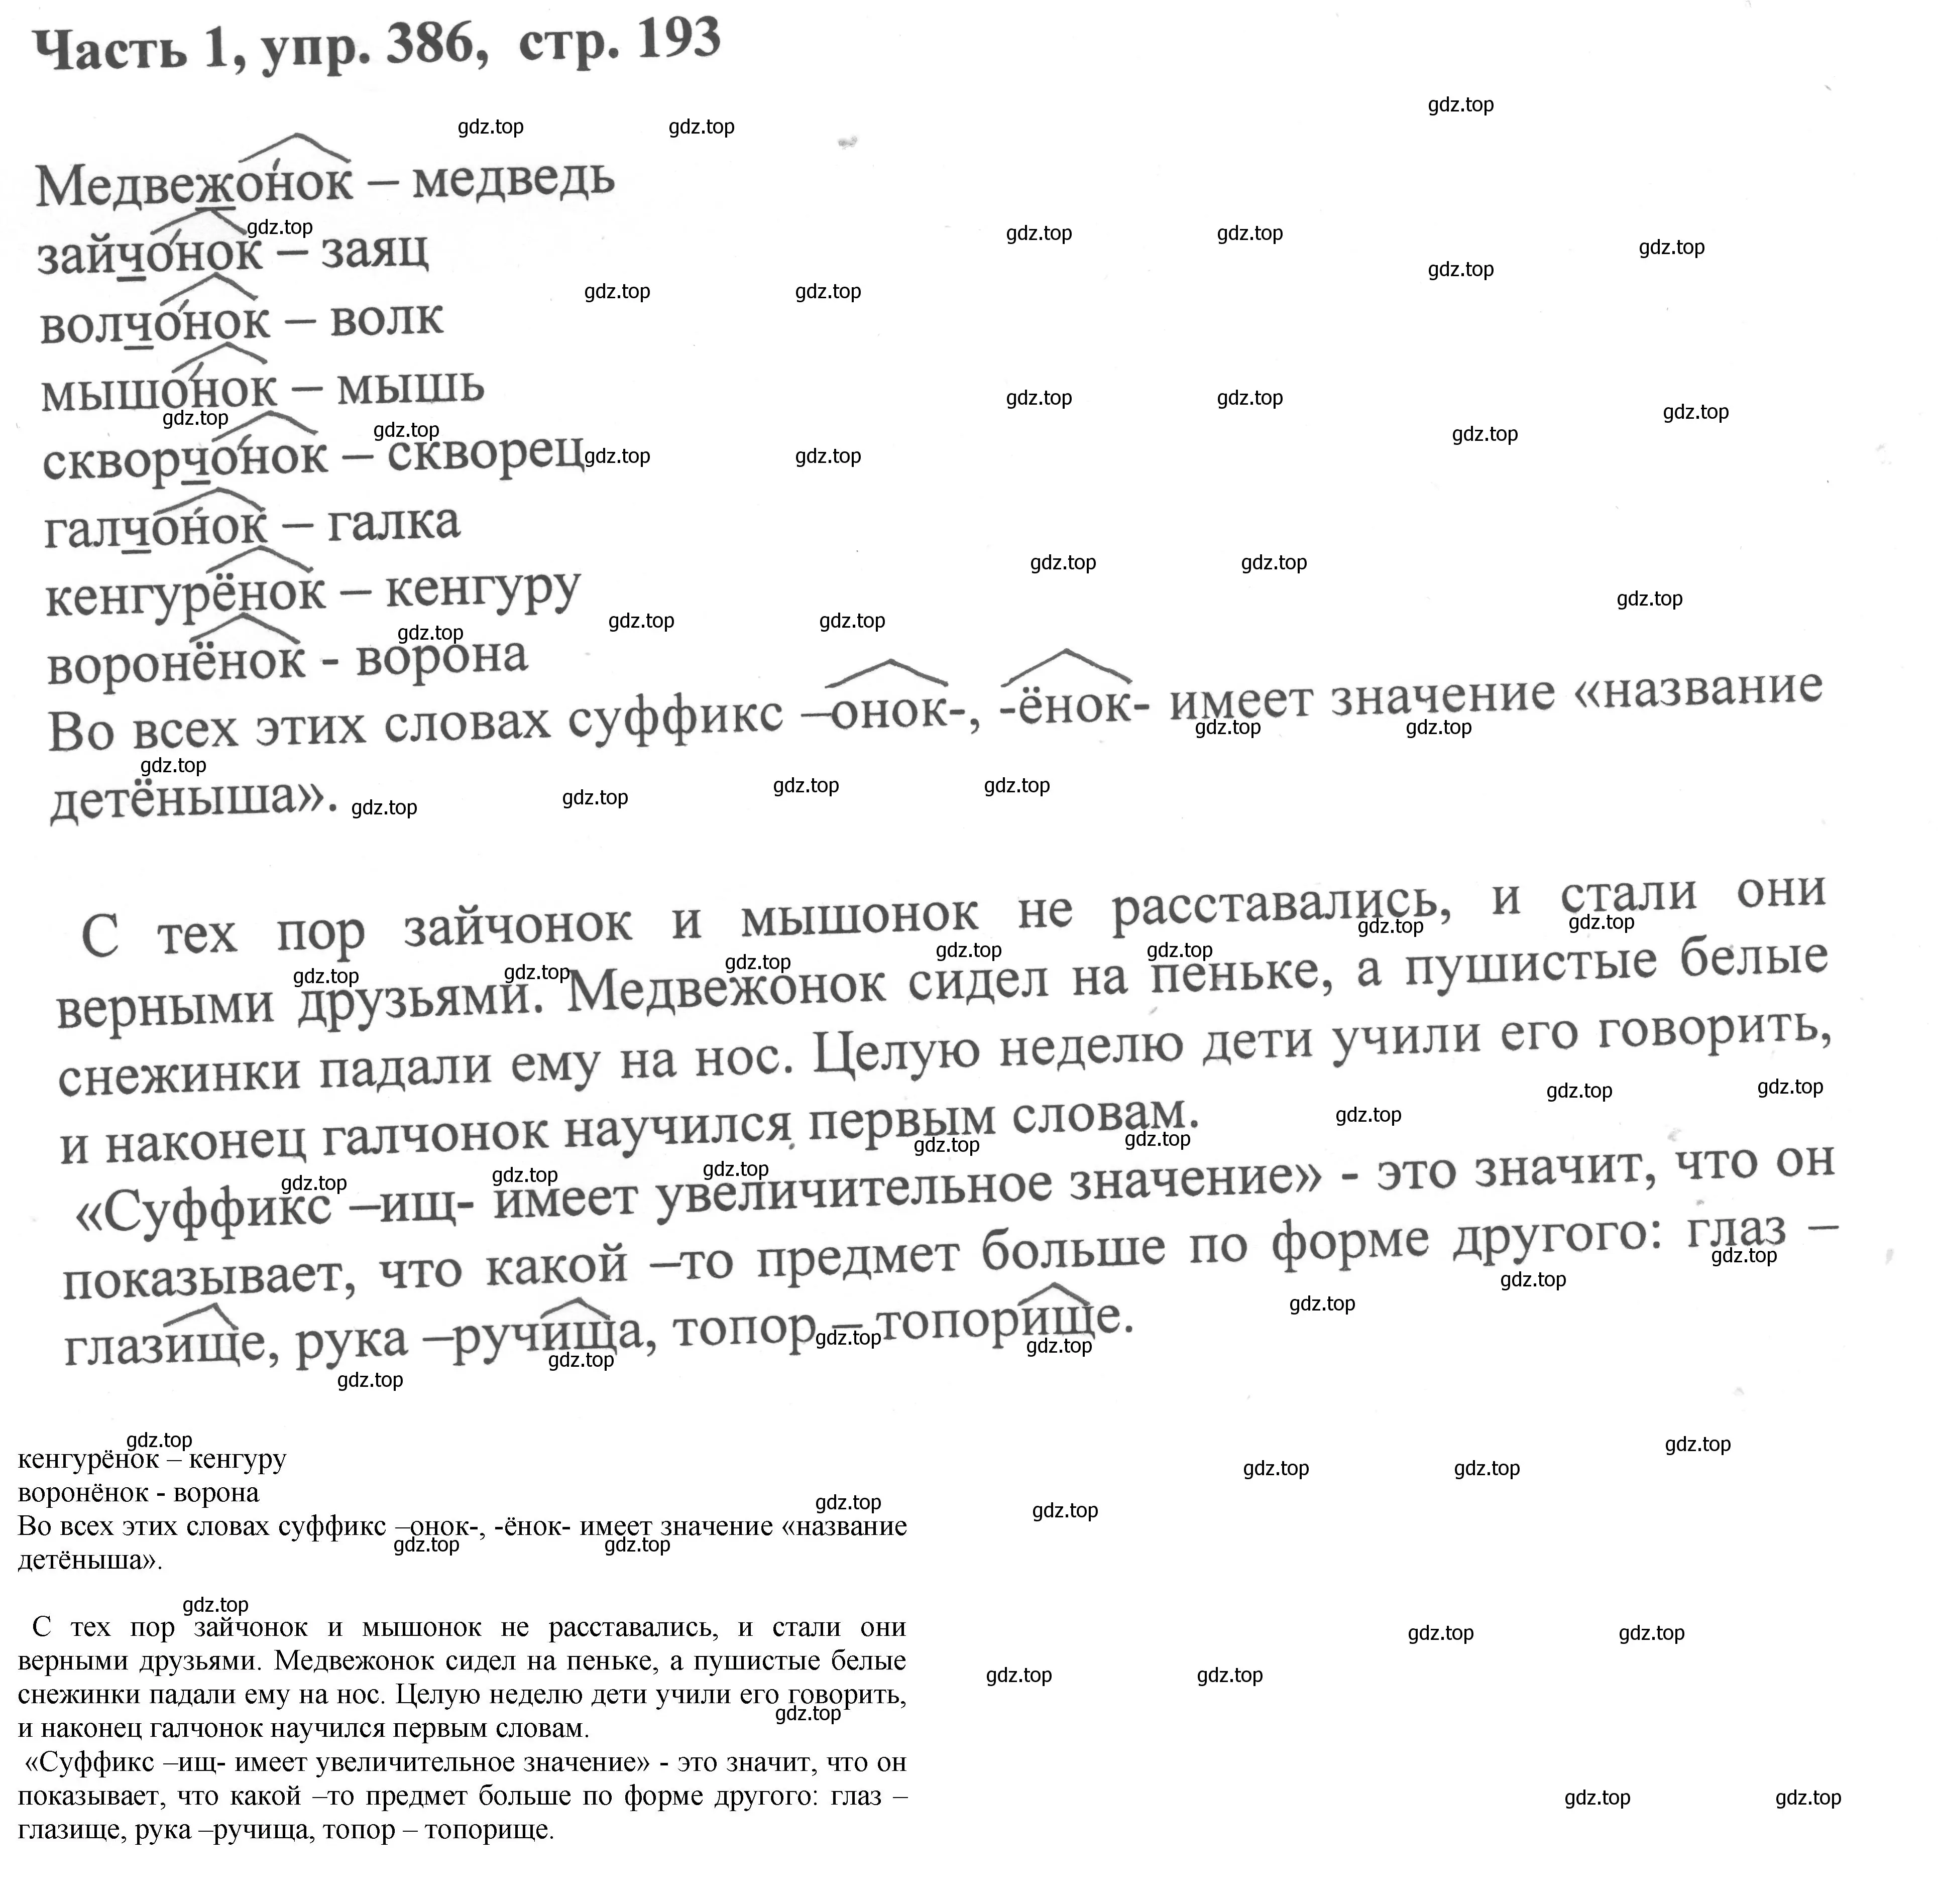 Решение номер 386 (страница 193) гдз по русскому языку 6 класс Баранов, Ладыженская, учебник 1 часть